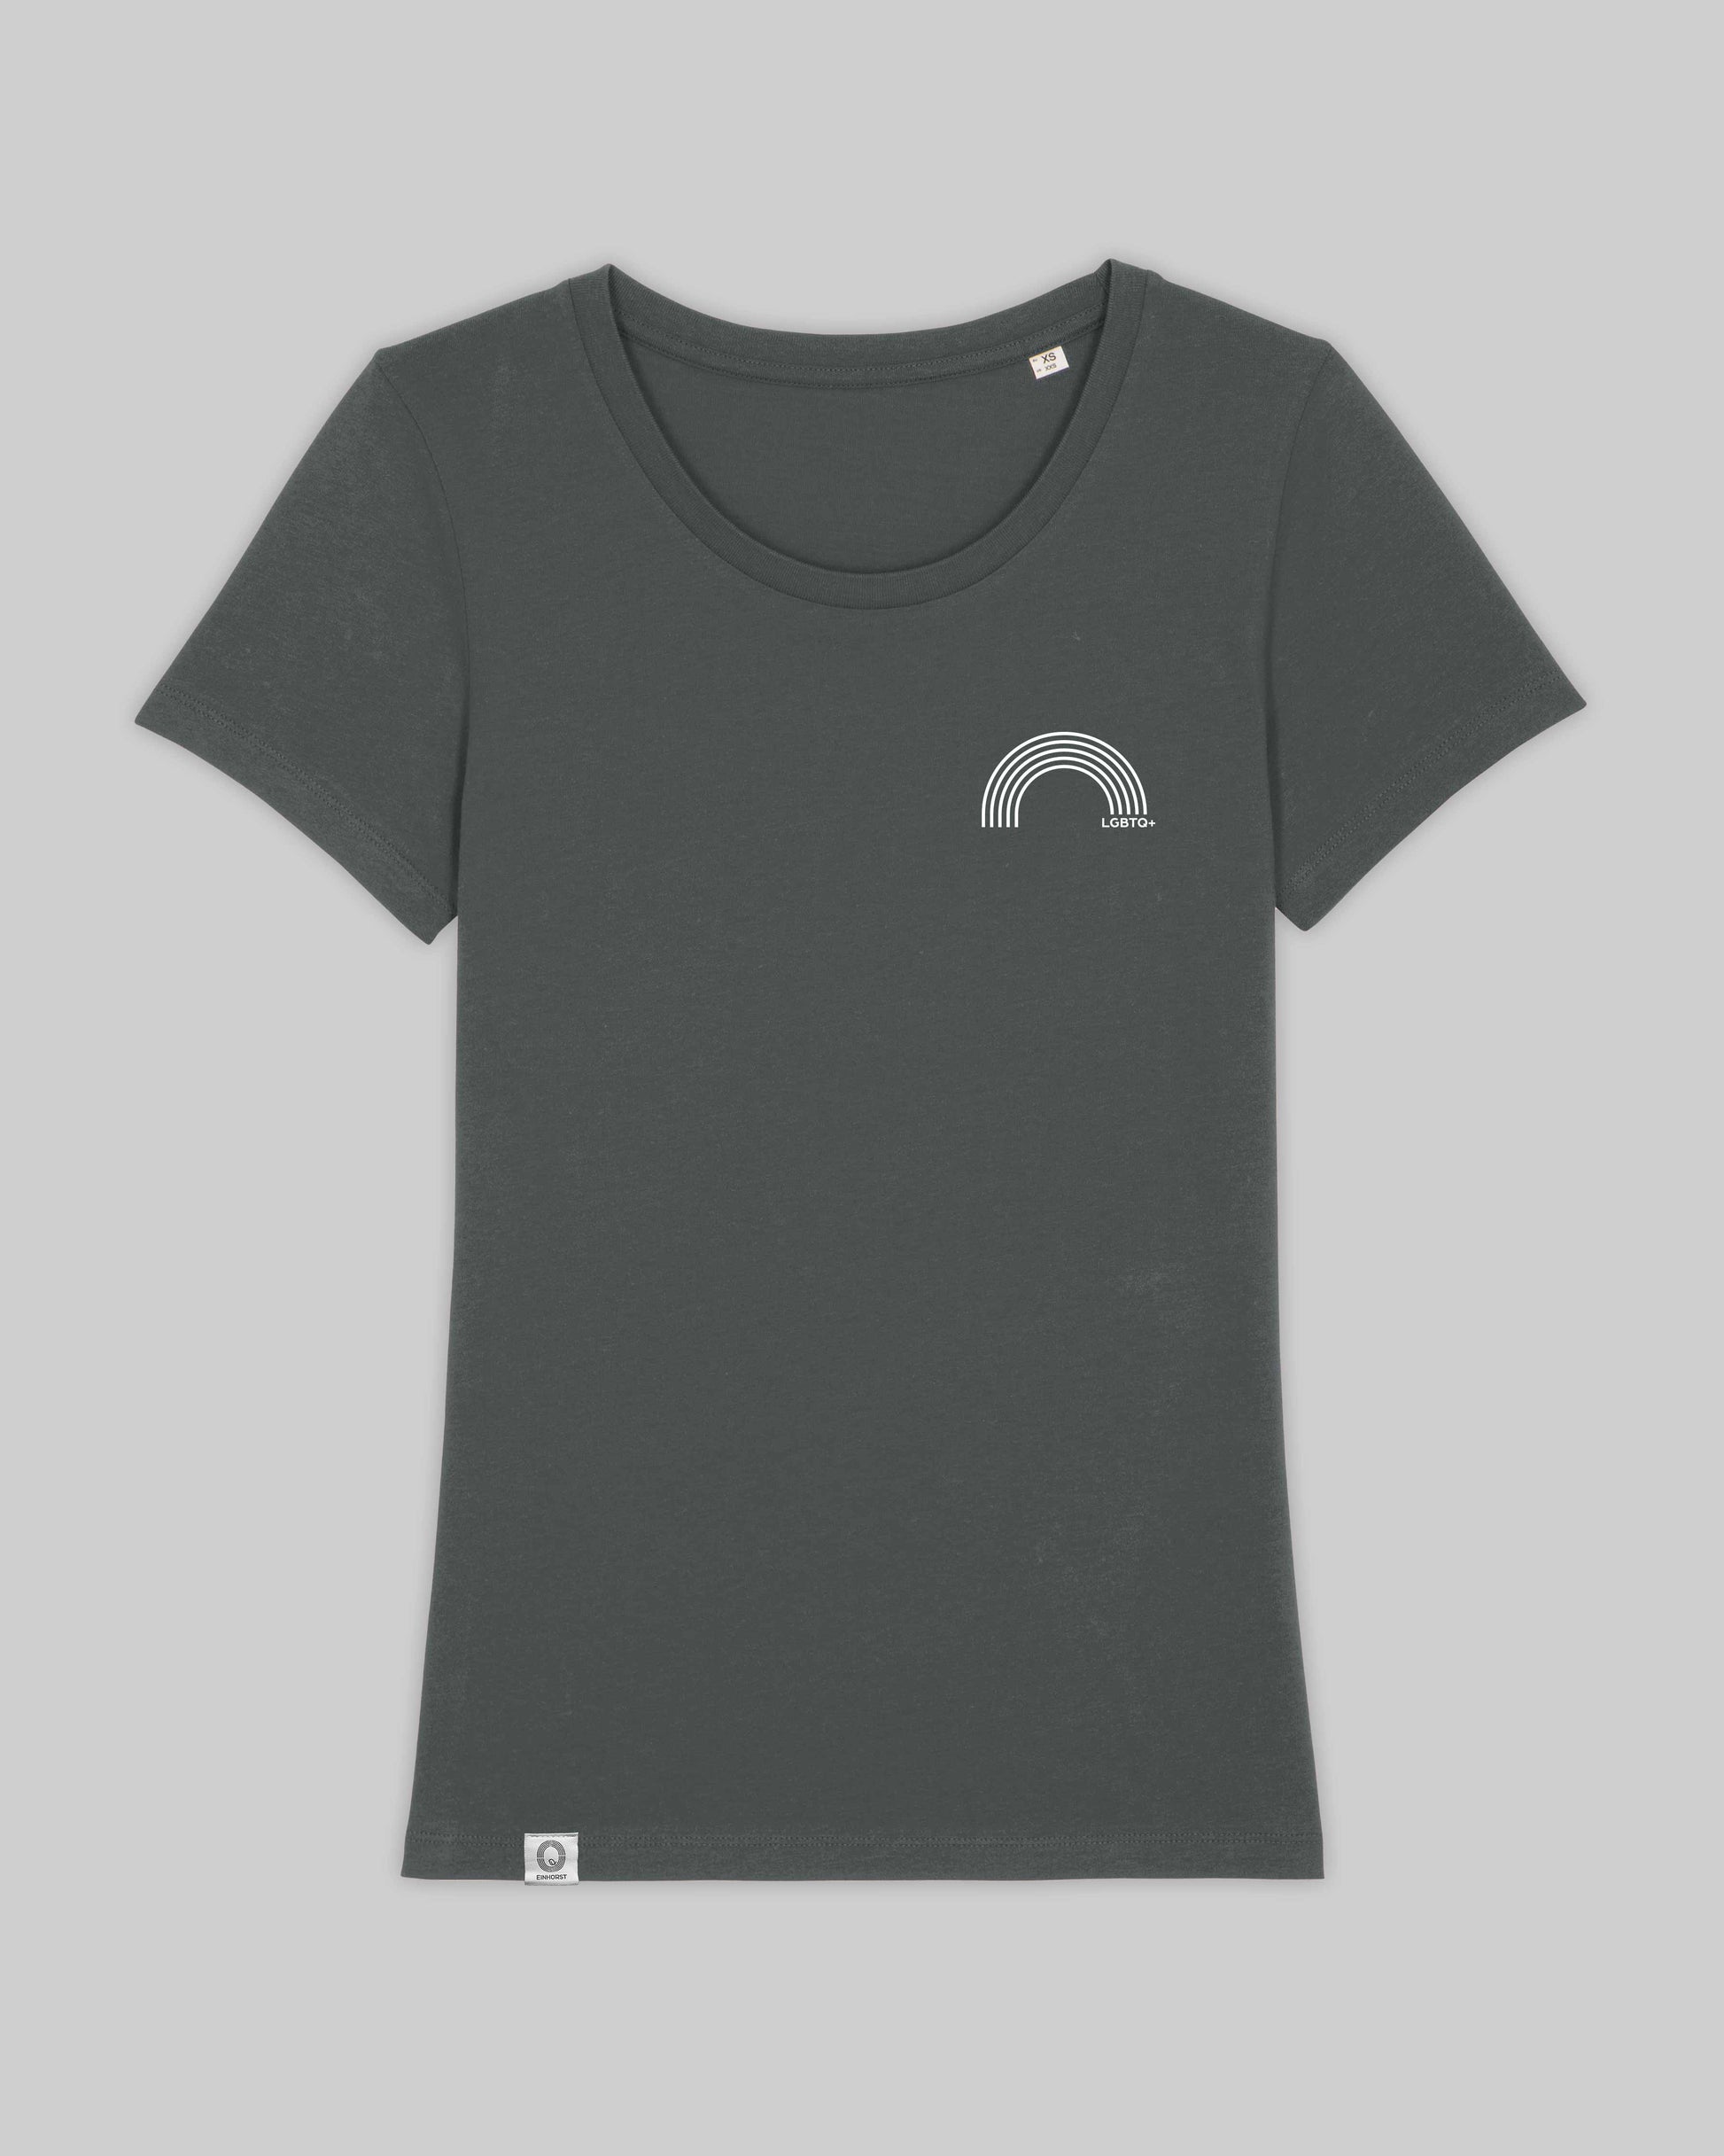 EINHORST® Organic Shirt tailliert in "Anthracite" mit dem Motiv "lgbtq+ Regenbogen" in der Kombination weißer Regenbogen mit weißer Schrift, Bild von Shirt von vorne